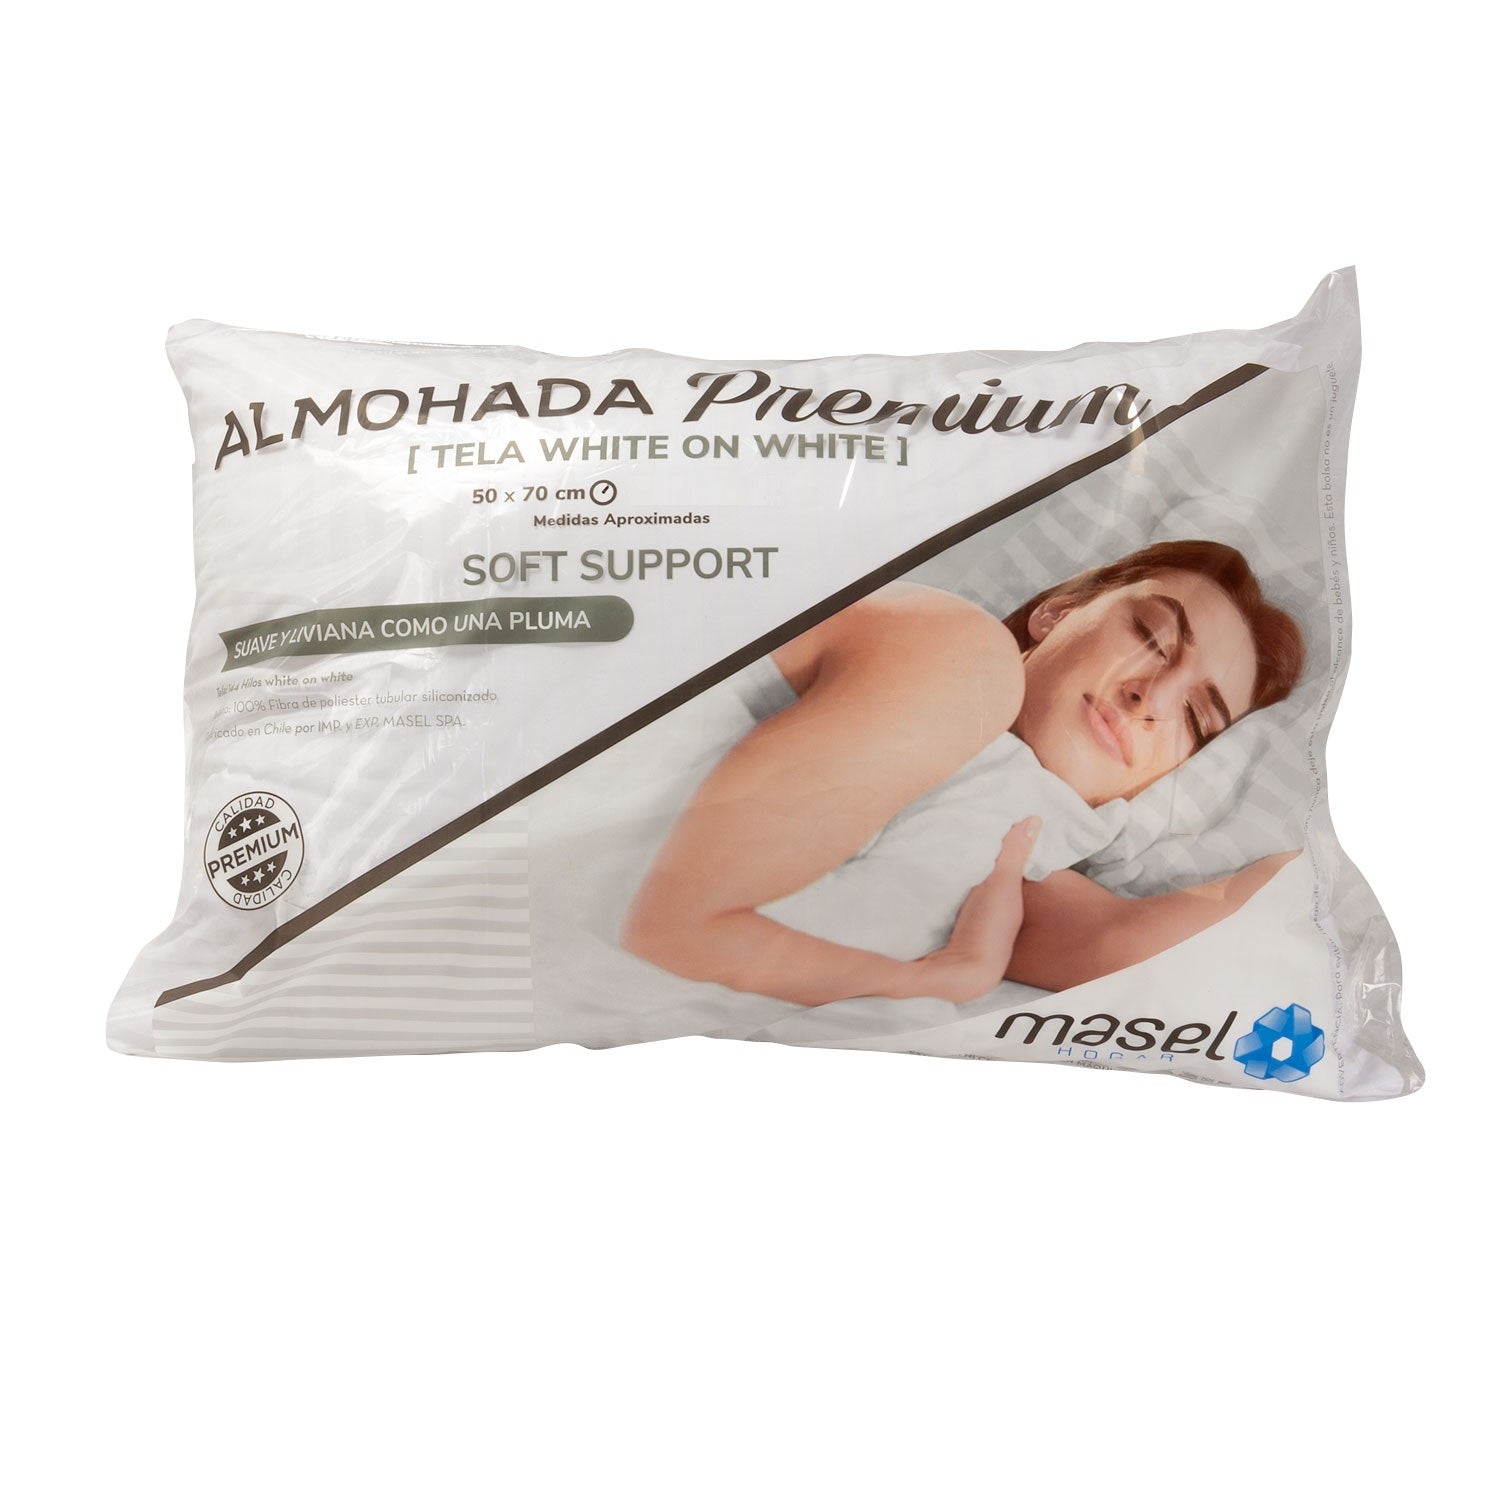 Almohada Premium Soft Support 50x70 cm